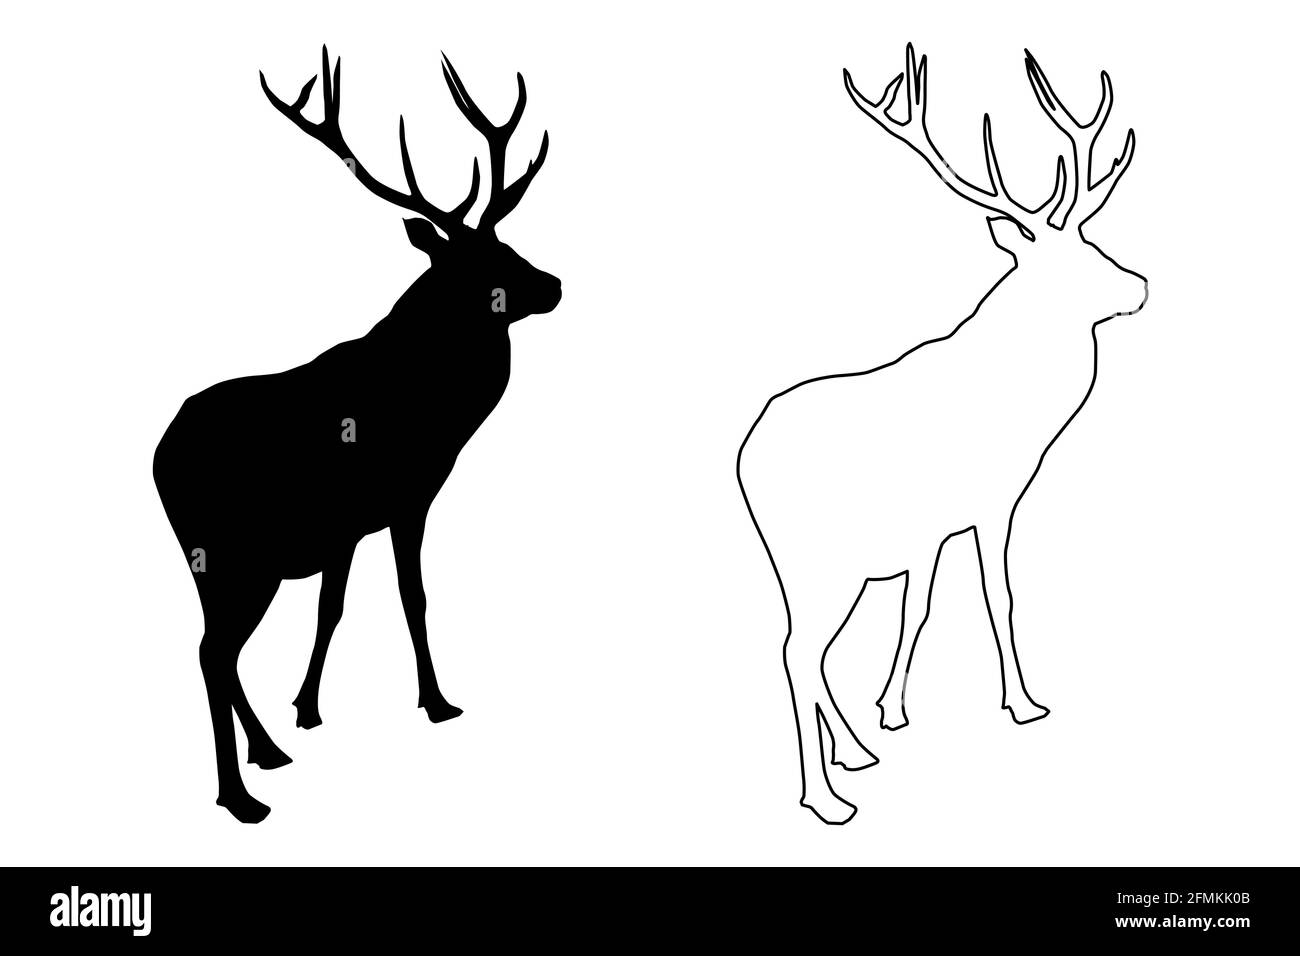 Red deer (Cervus elaphus) black silhouette, stag or hart, Stock Vector